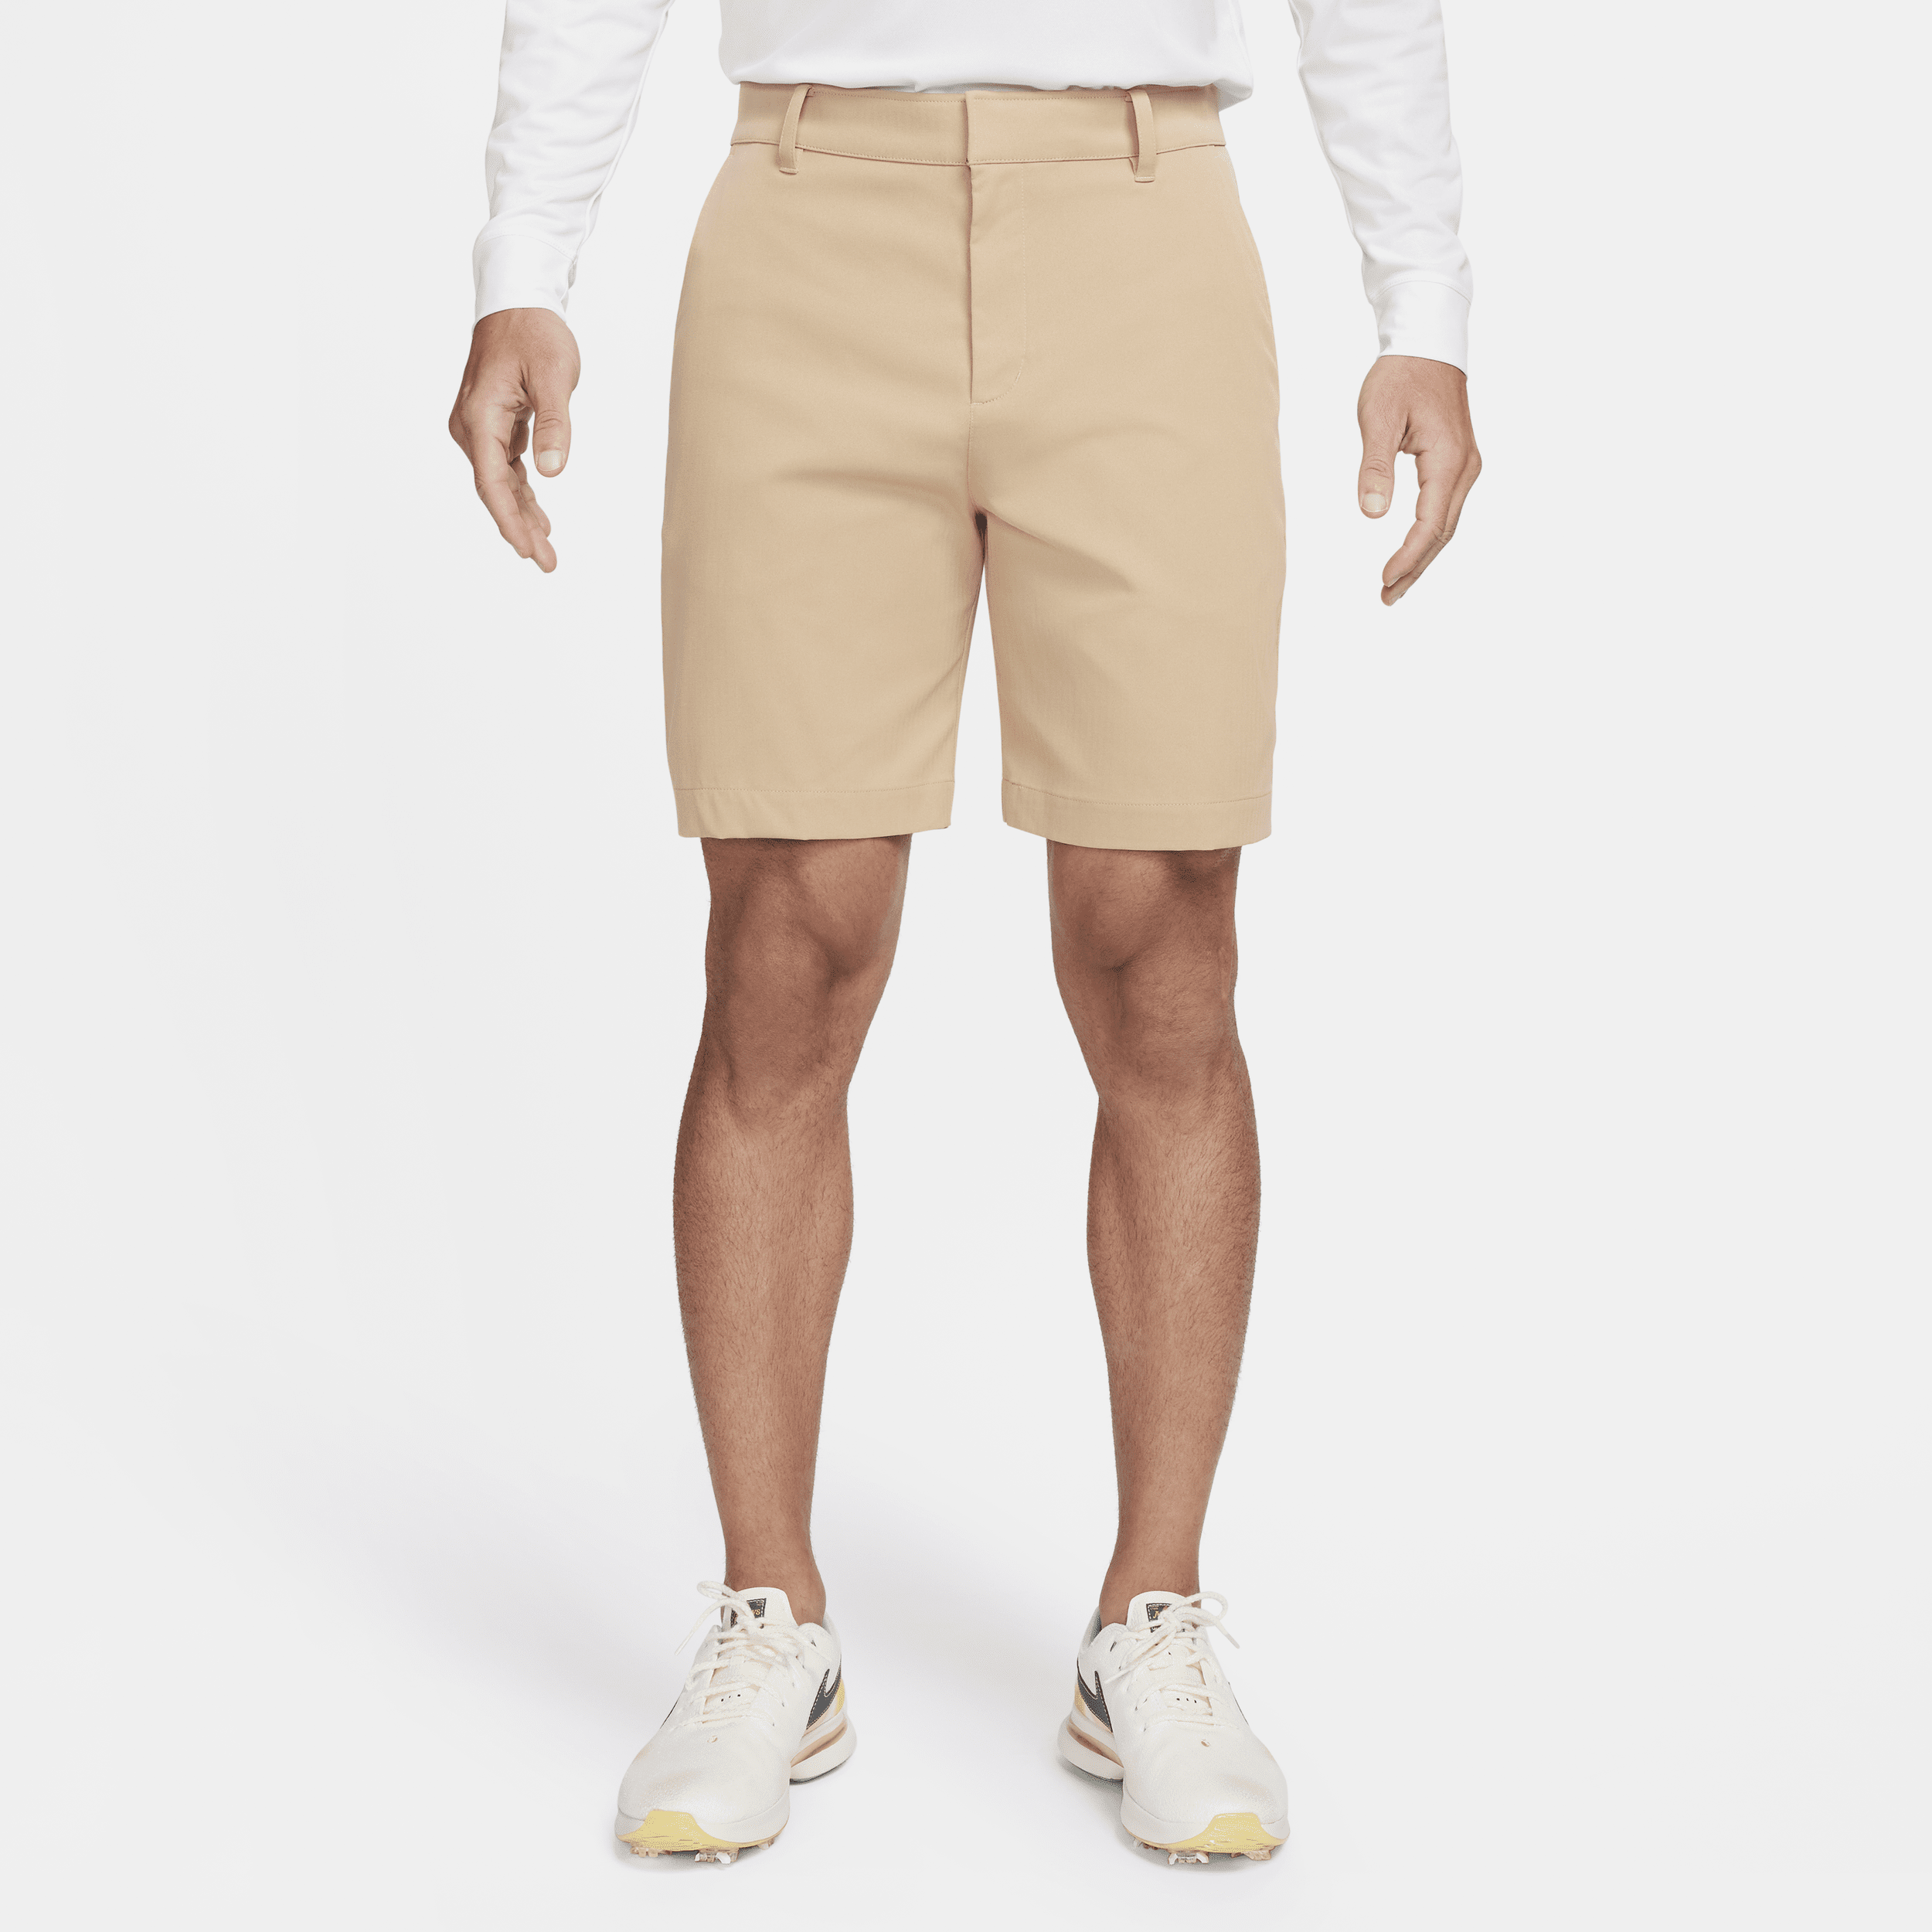 Nike Tour Pantalón corto chino de golf de 20 cm - Hombre - Marrón